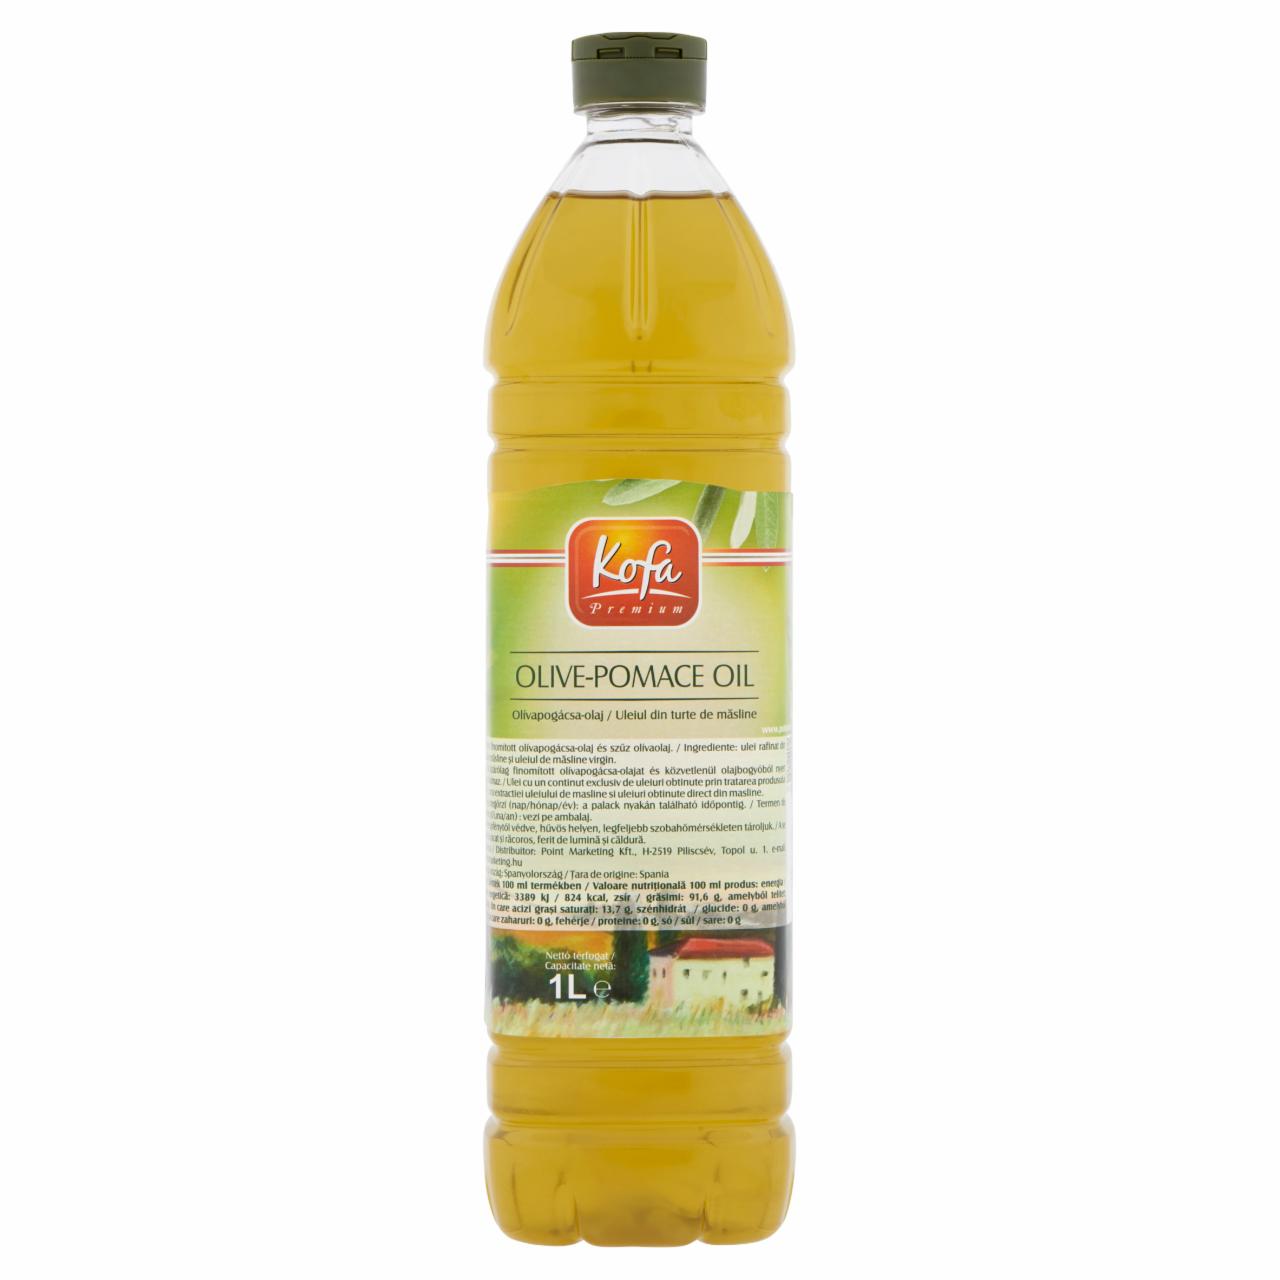 Képek - Kofa Premium olívapogácsa-olaj 1 l